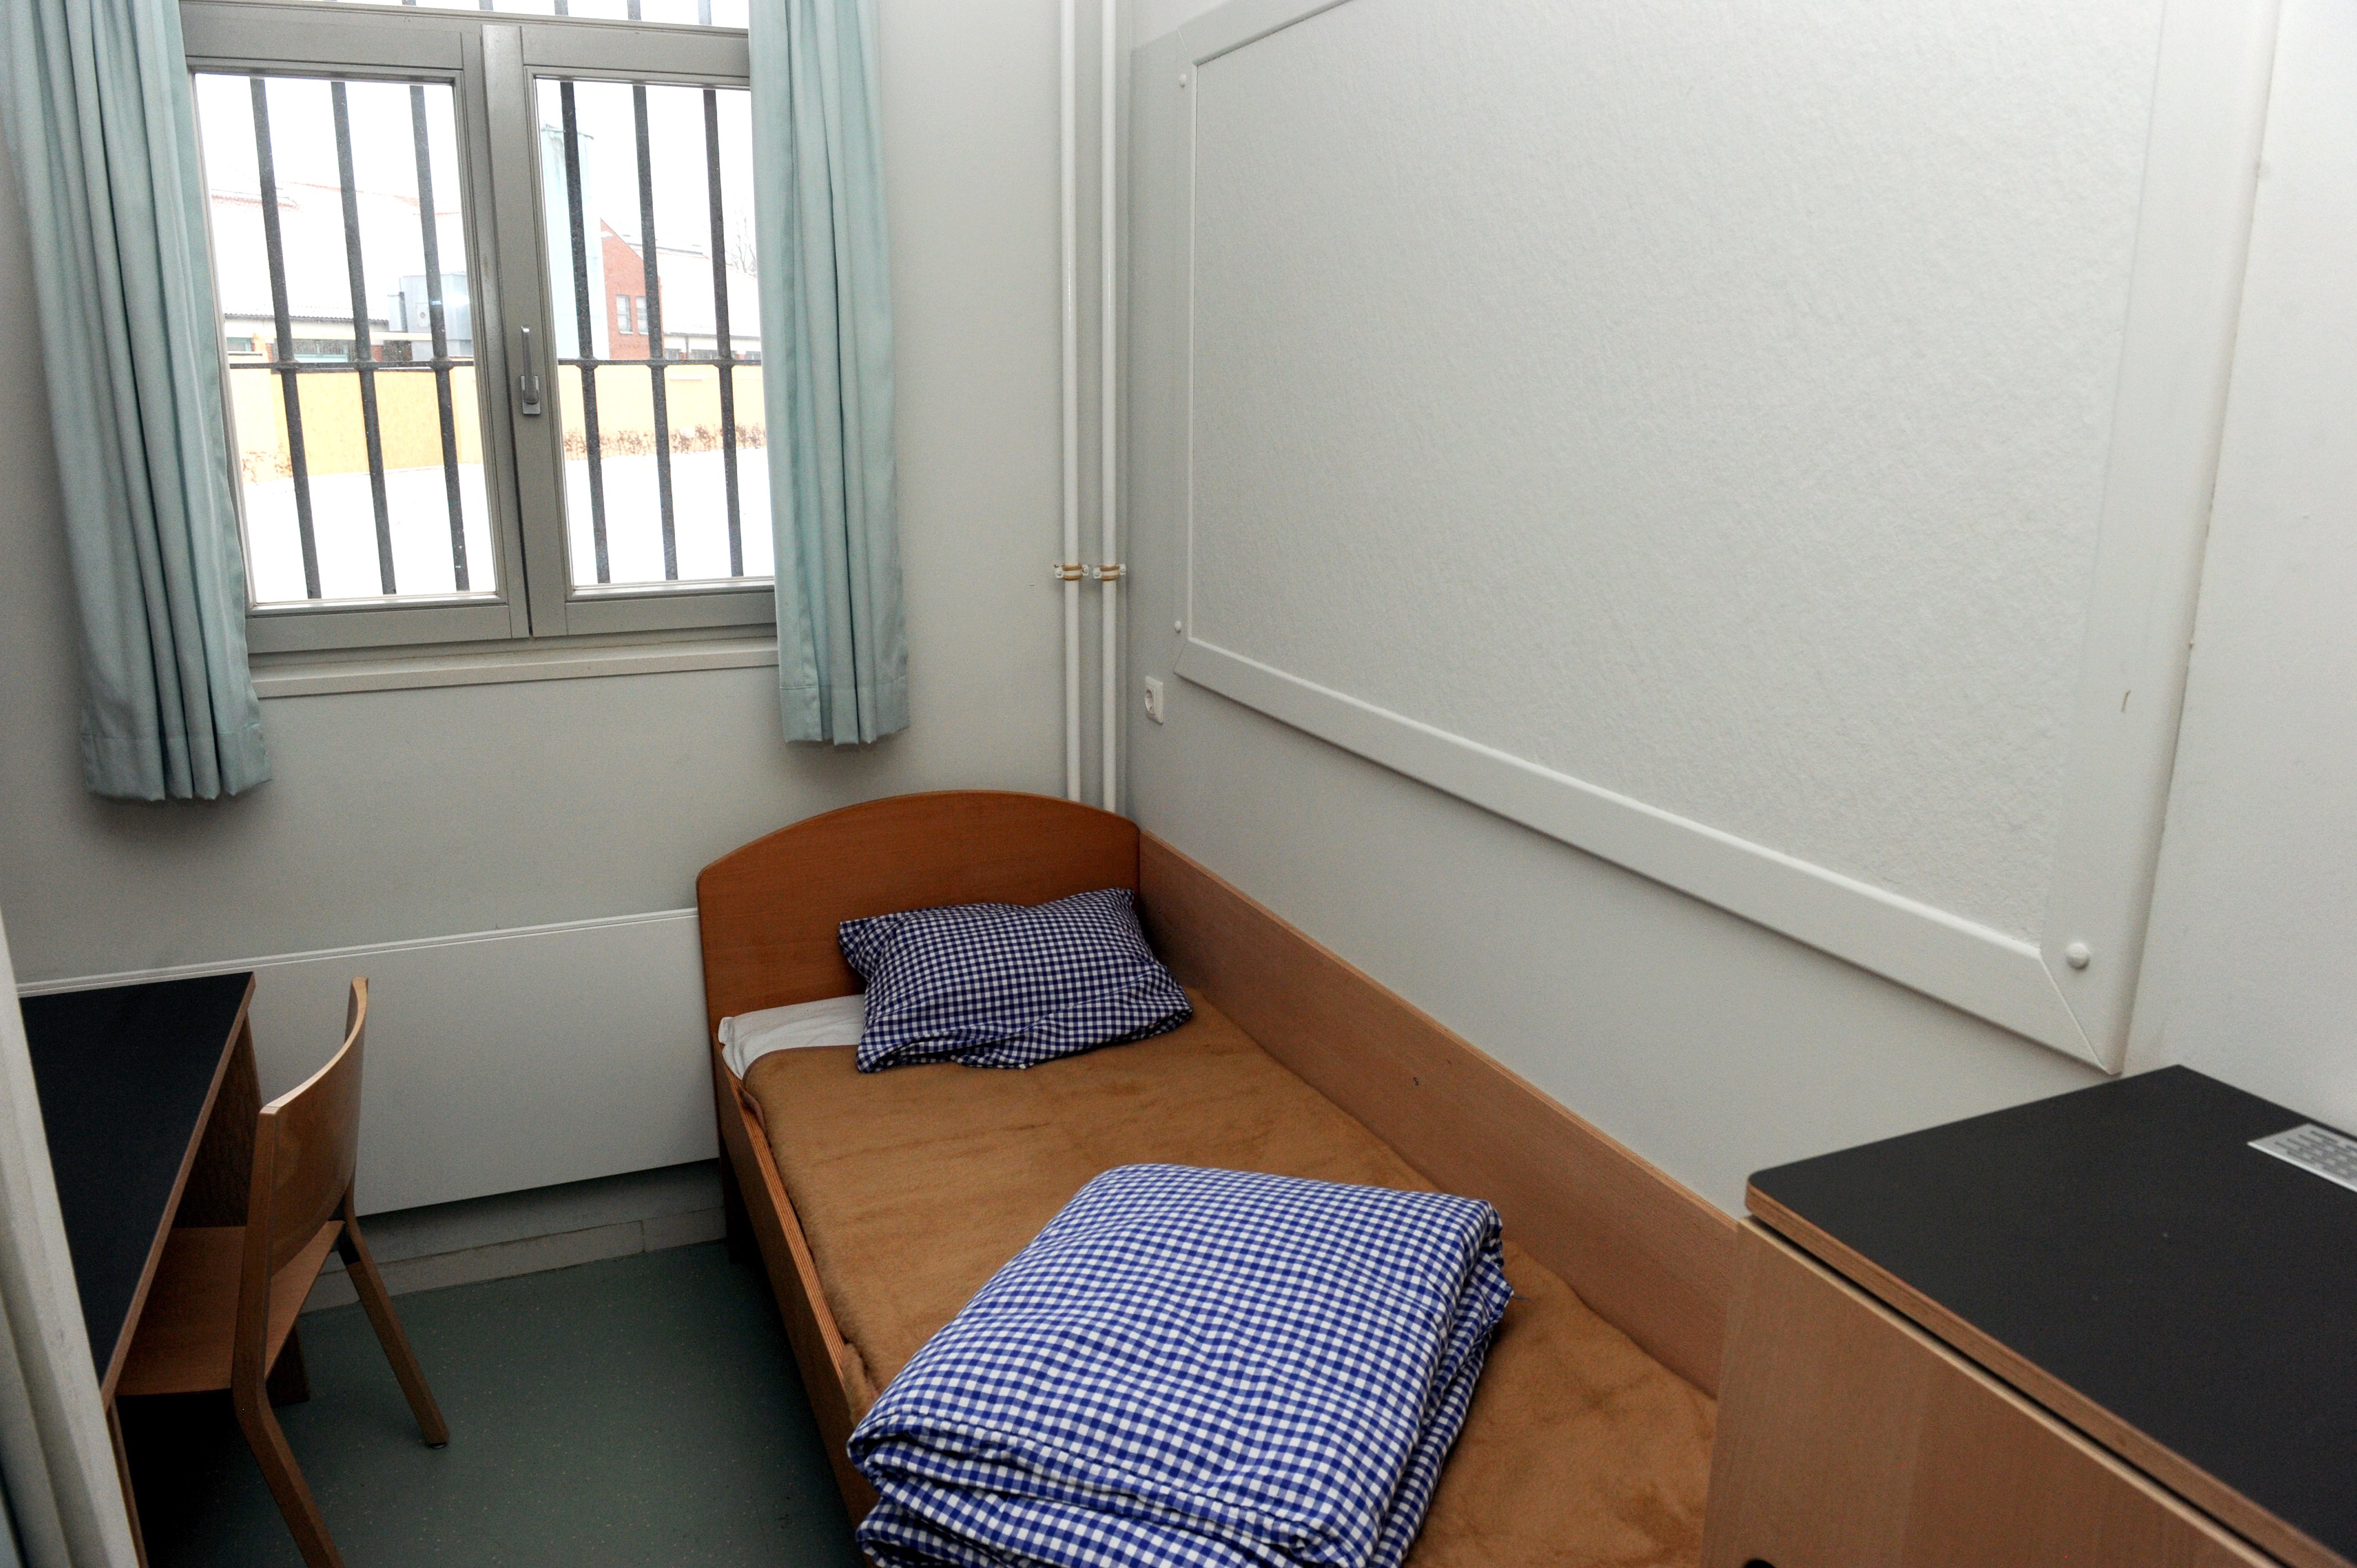 Els presos de Neumünster ho tenen clar: "Puigdemont no hauria de ser aquí"